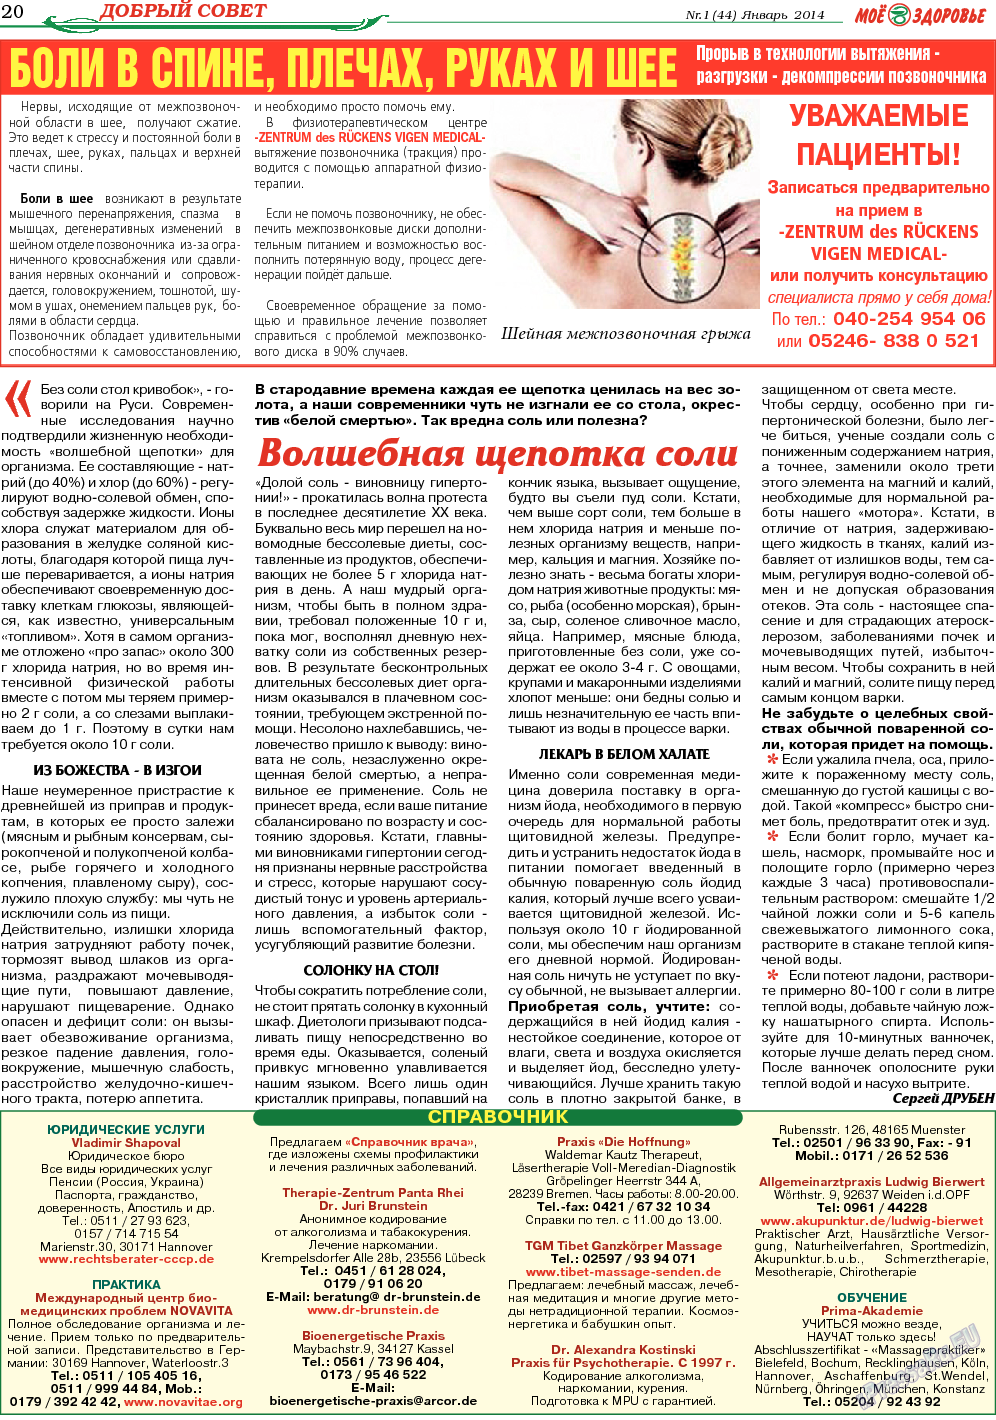 Кругозор, газета. 2014 №1 стр.20